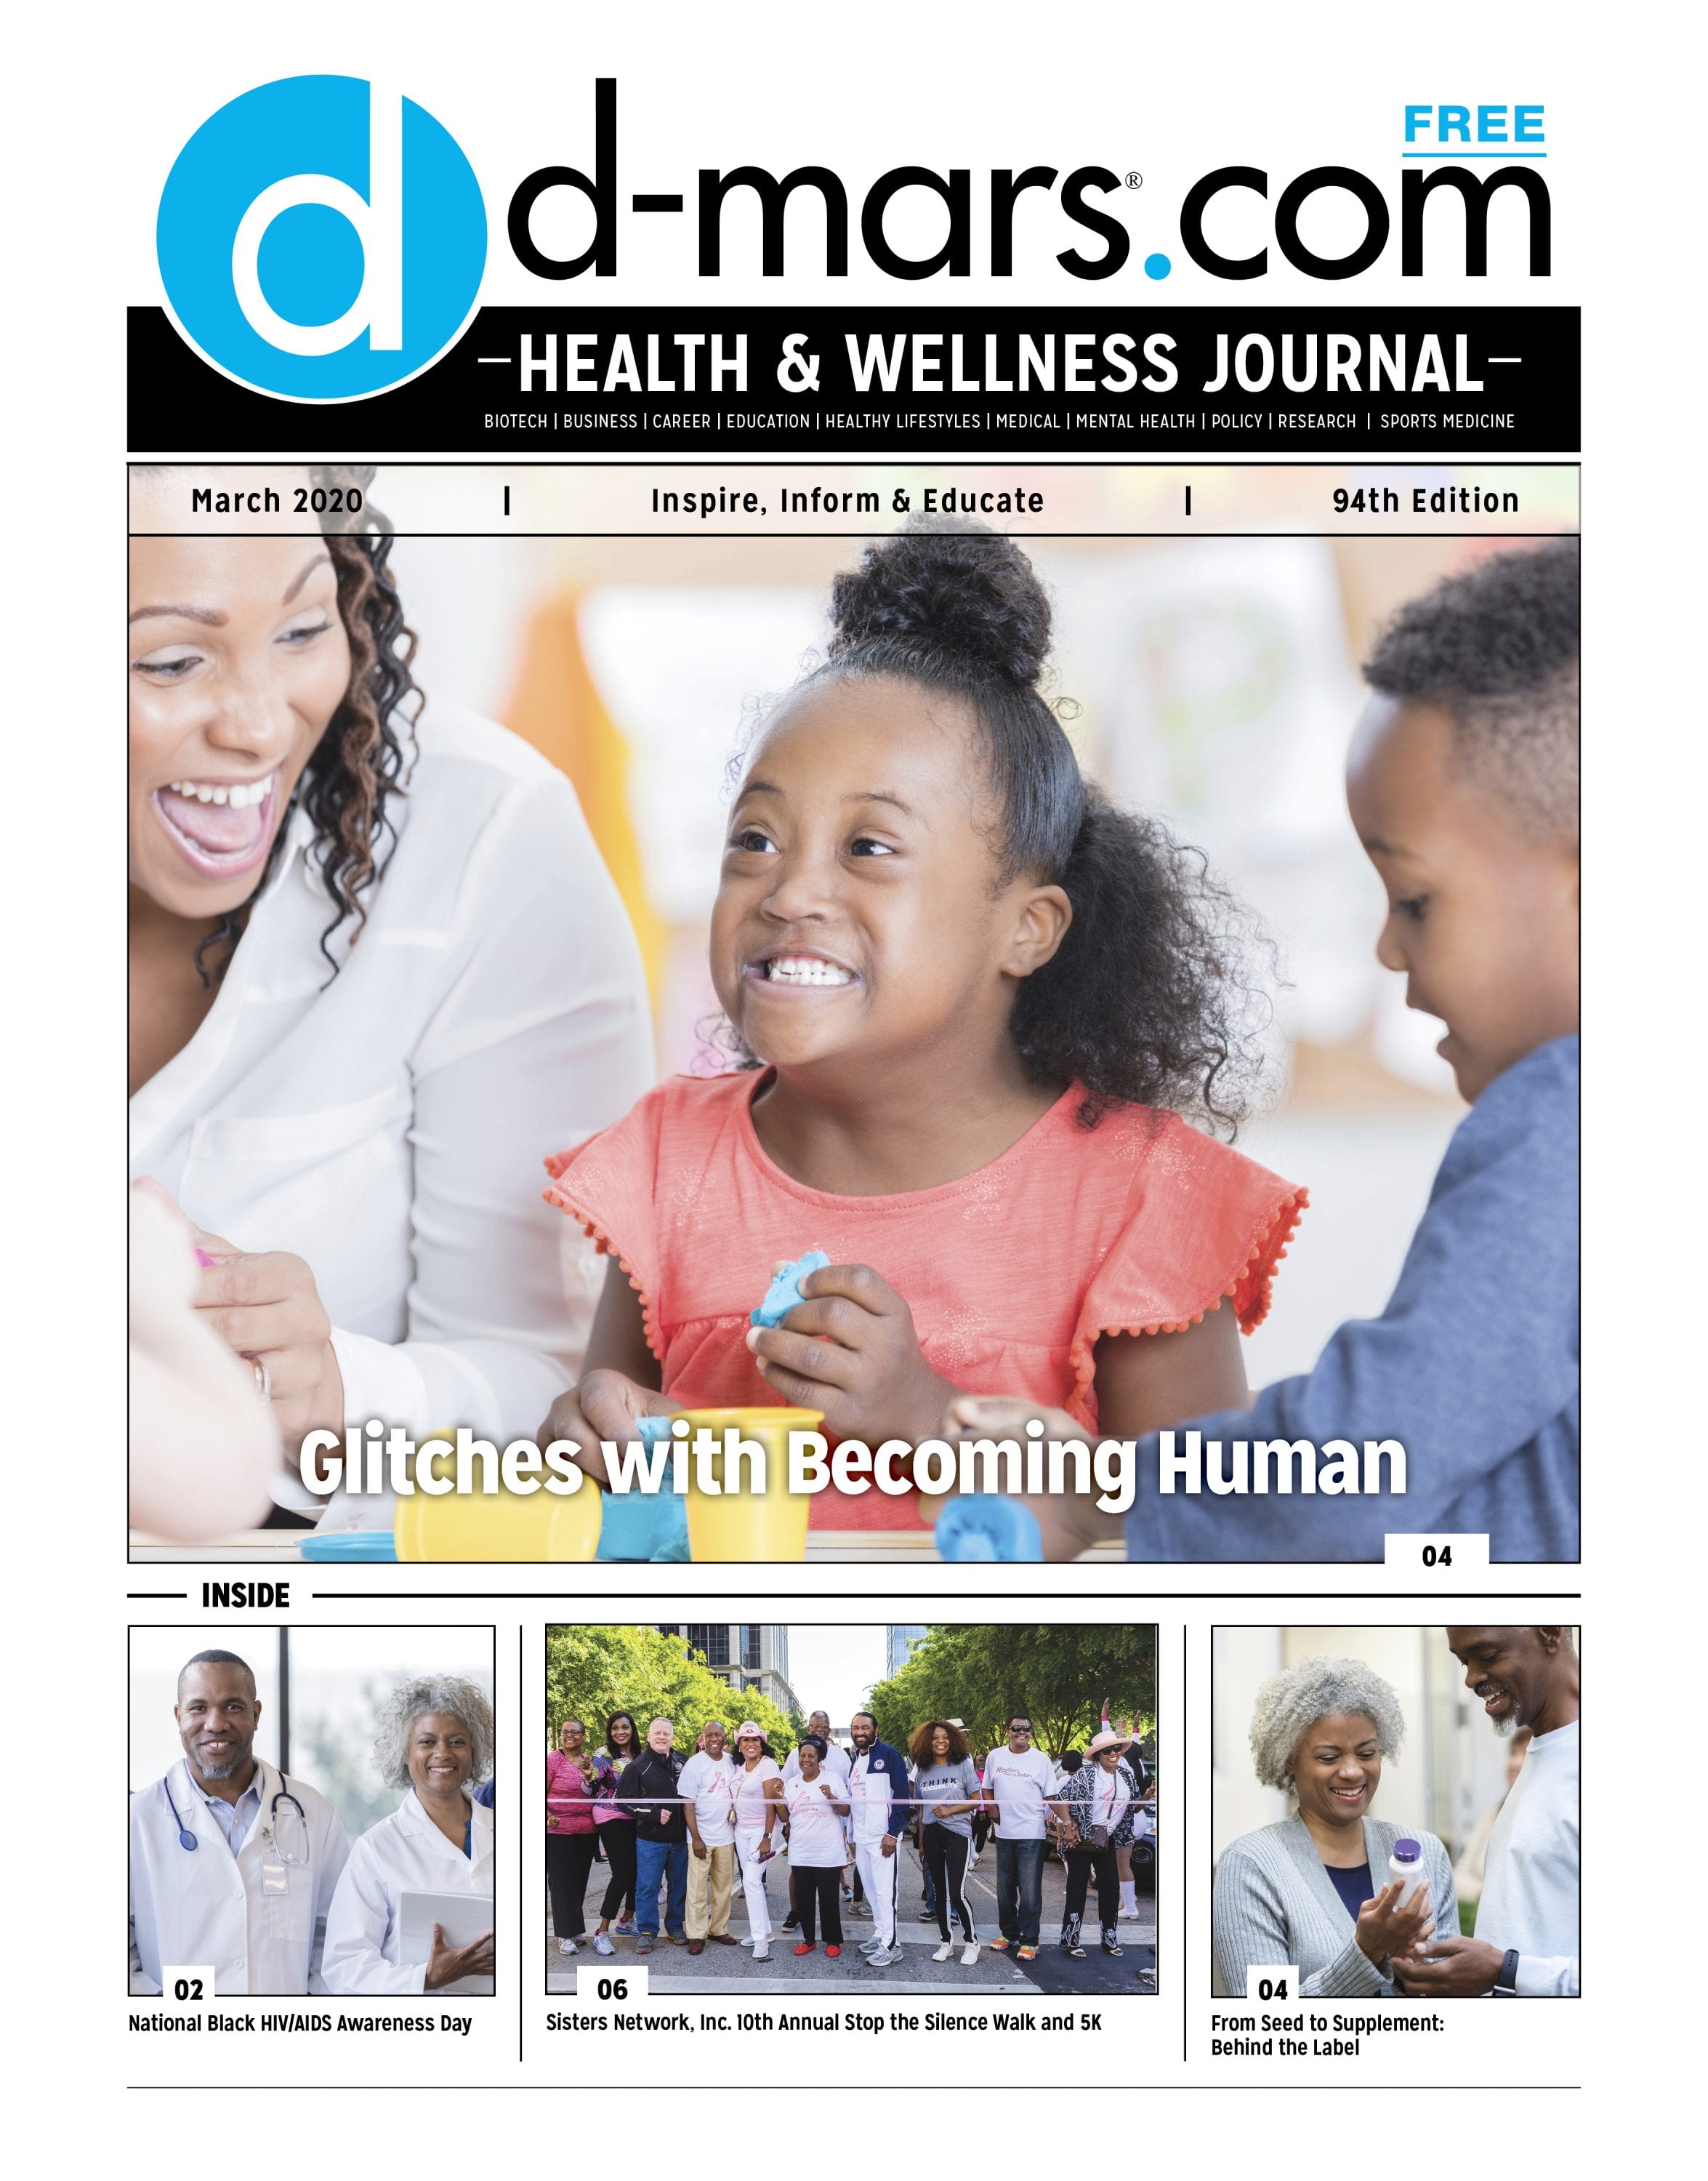 Health & Wellness Journal 94